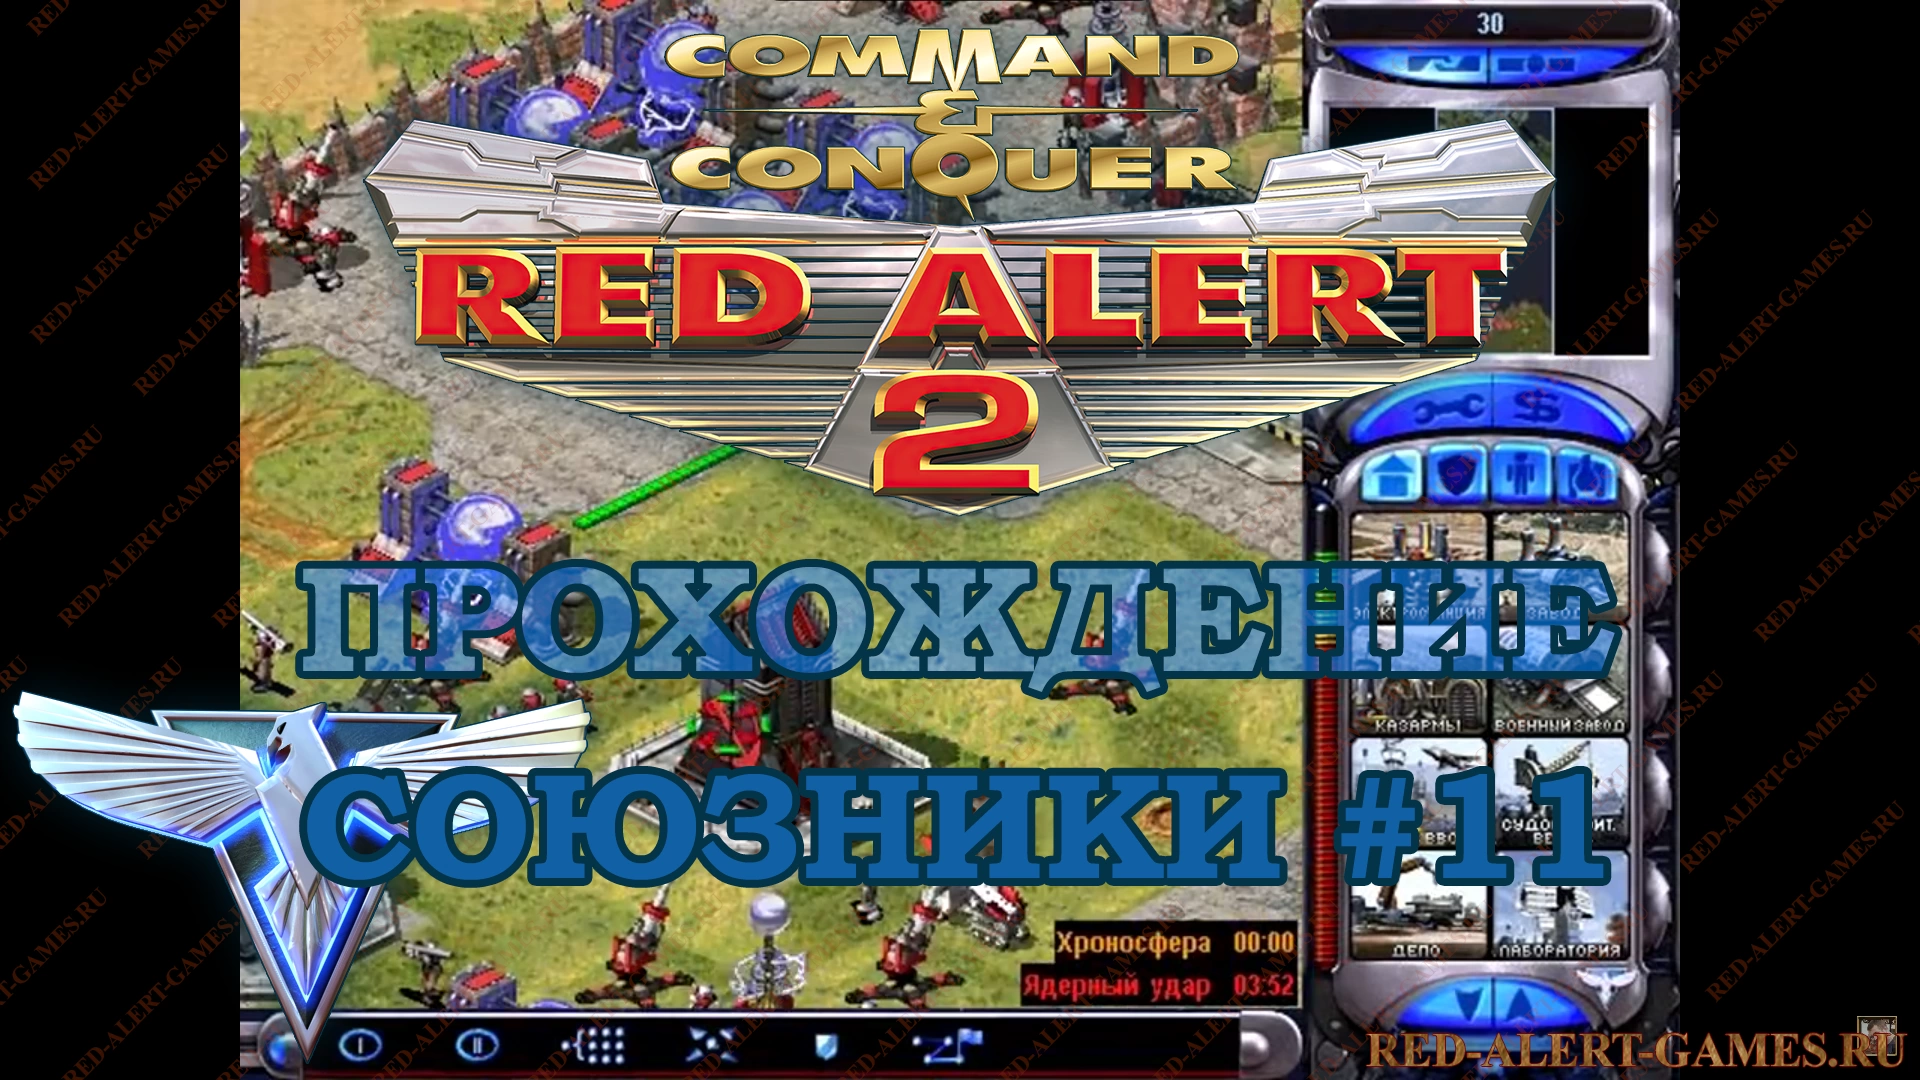 Red Alert 2 Прохождение Союзники - Миссия 11. Возрождение (Fallout)